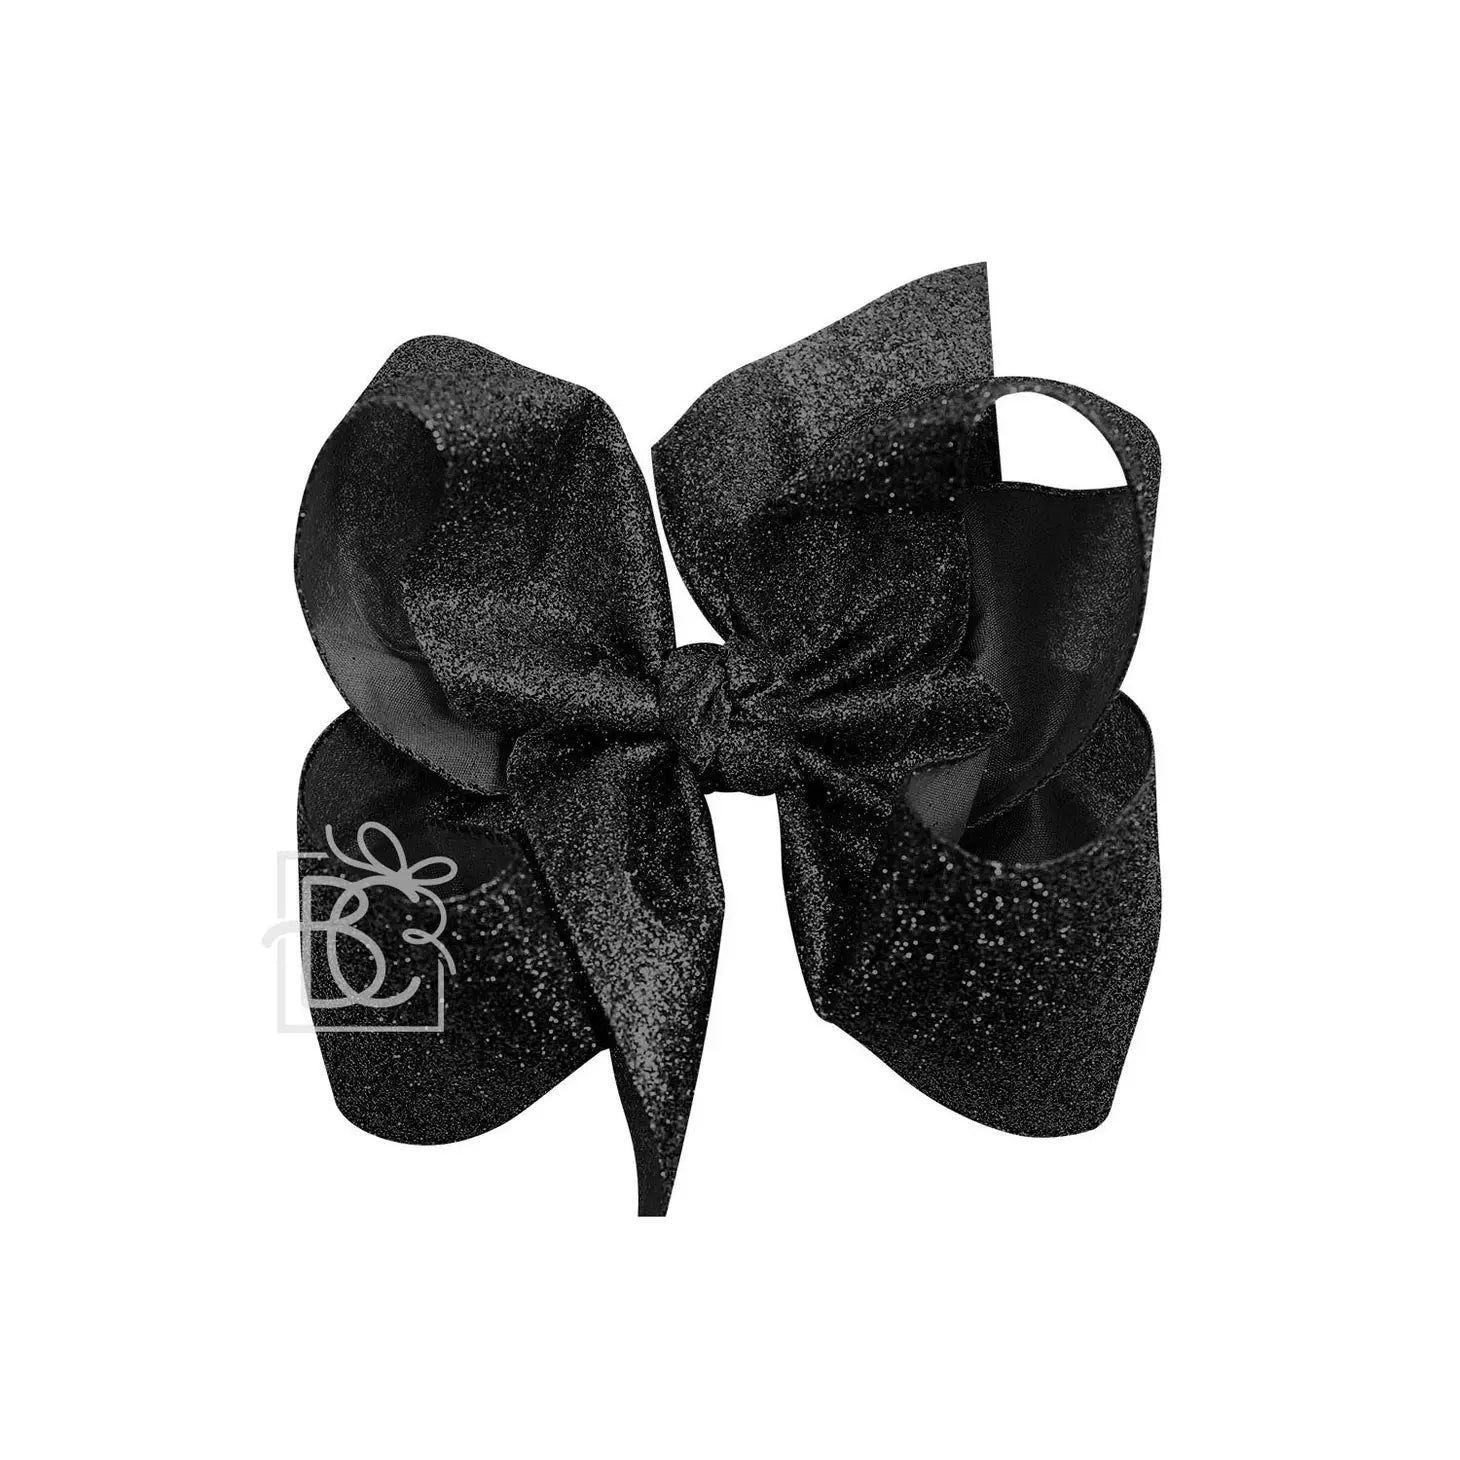 Jumbo Glitter Bow in Black  - Doodlebug's Children's Boutique